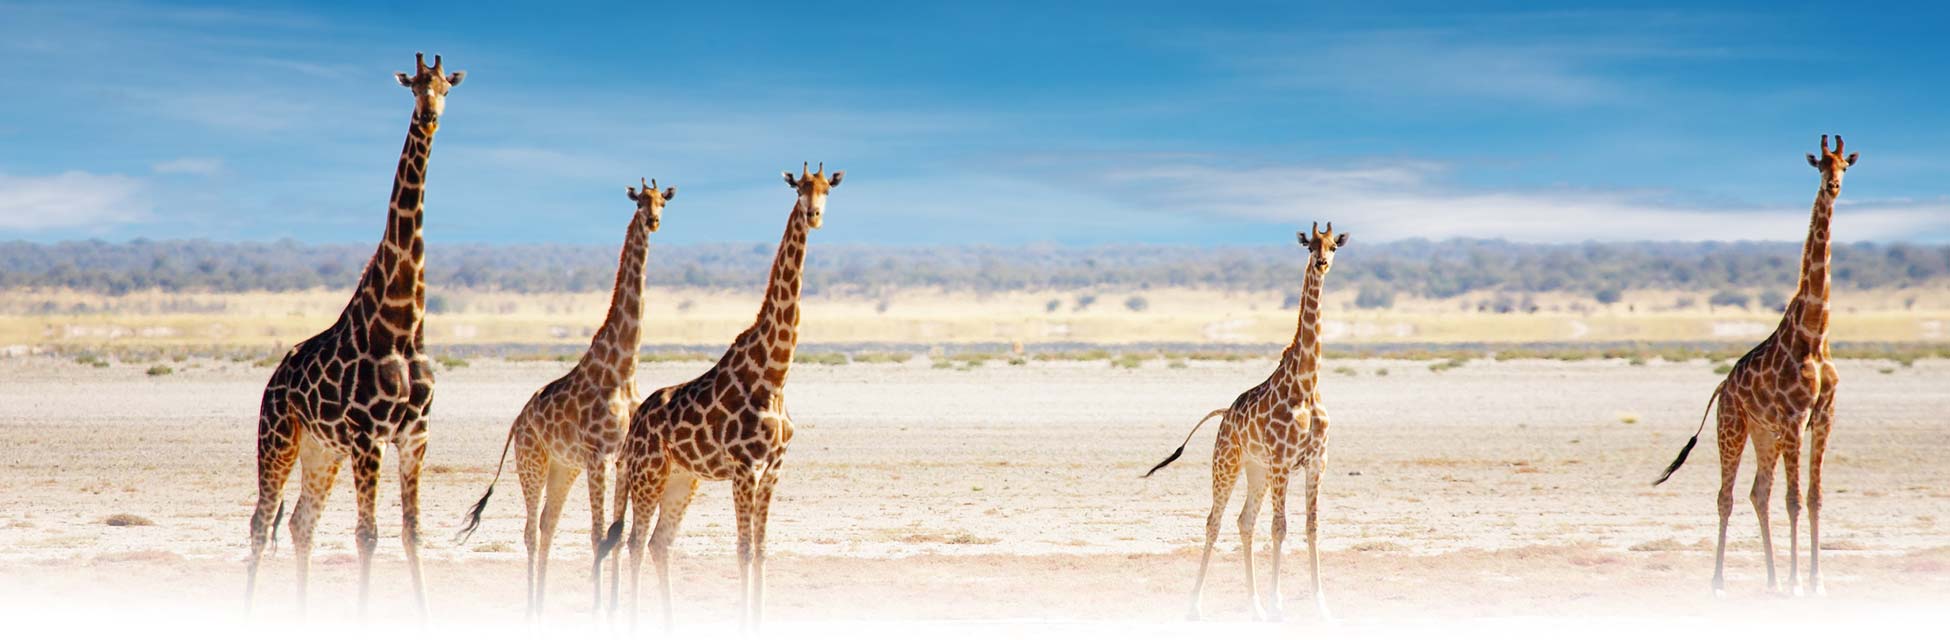 afrika-giraffe-kaapstad.jpg